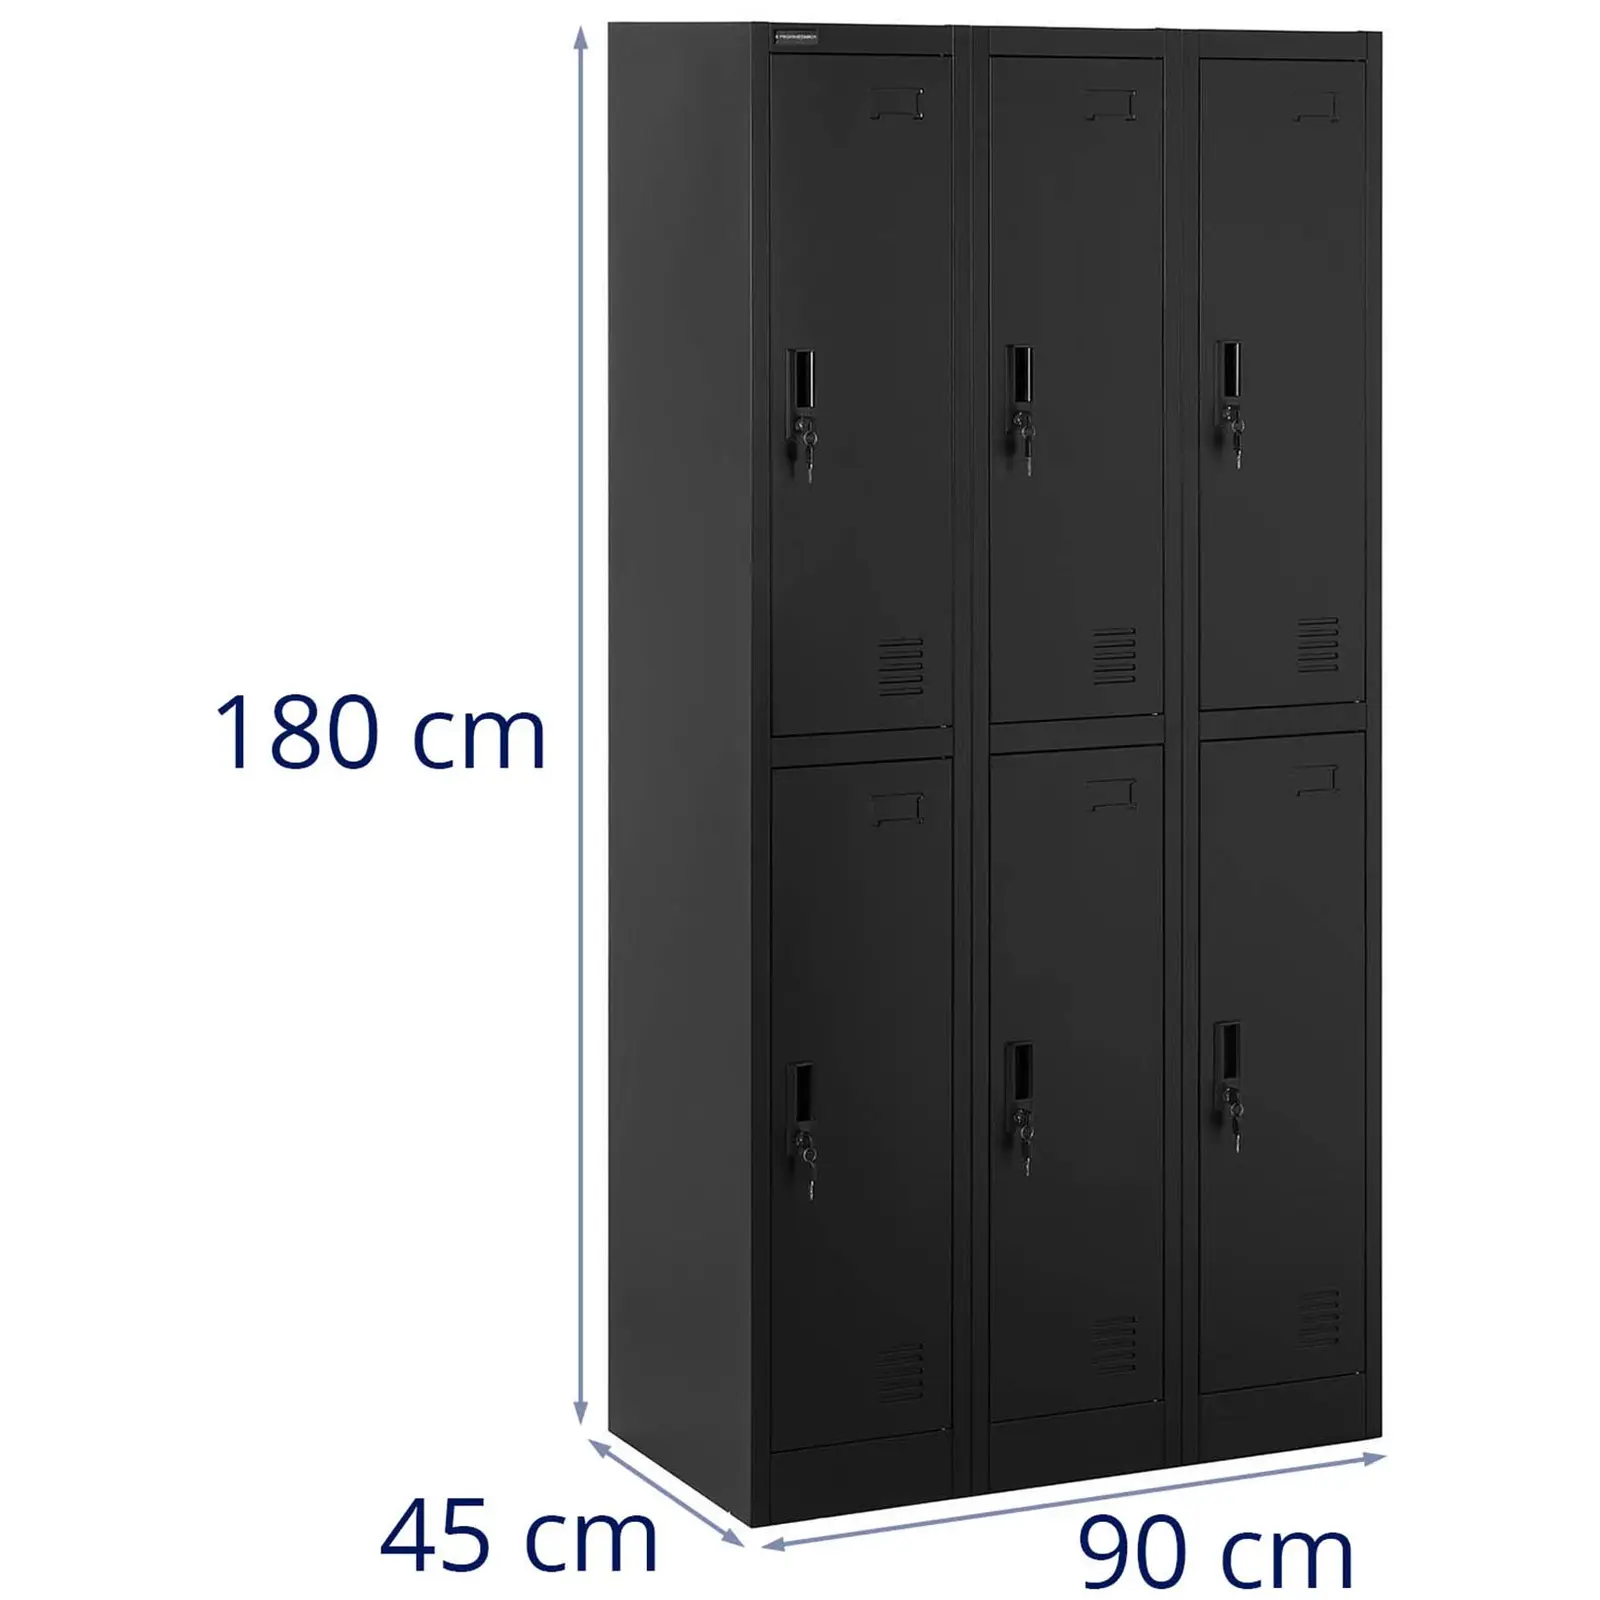 Cacifo metálico - 6 compartimentos - com fechadura - 200 kg